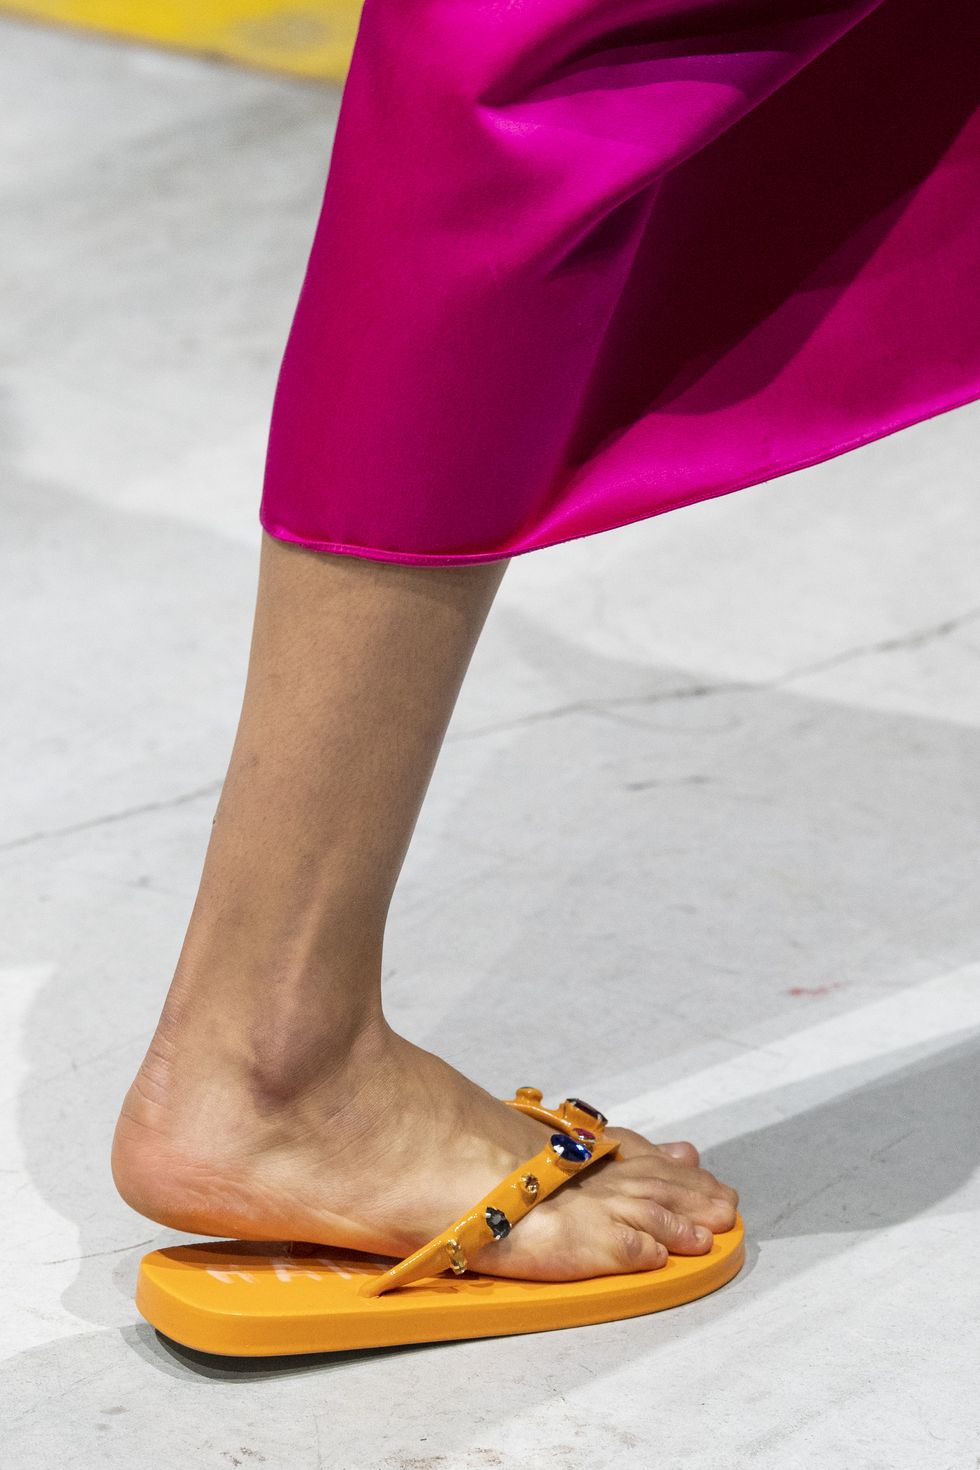 Le ciabatte da piscina sono i sandali moda dell'estate 2020